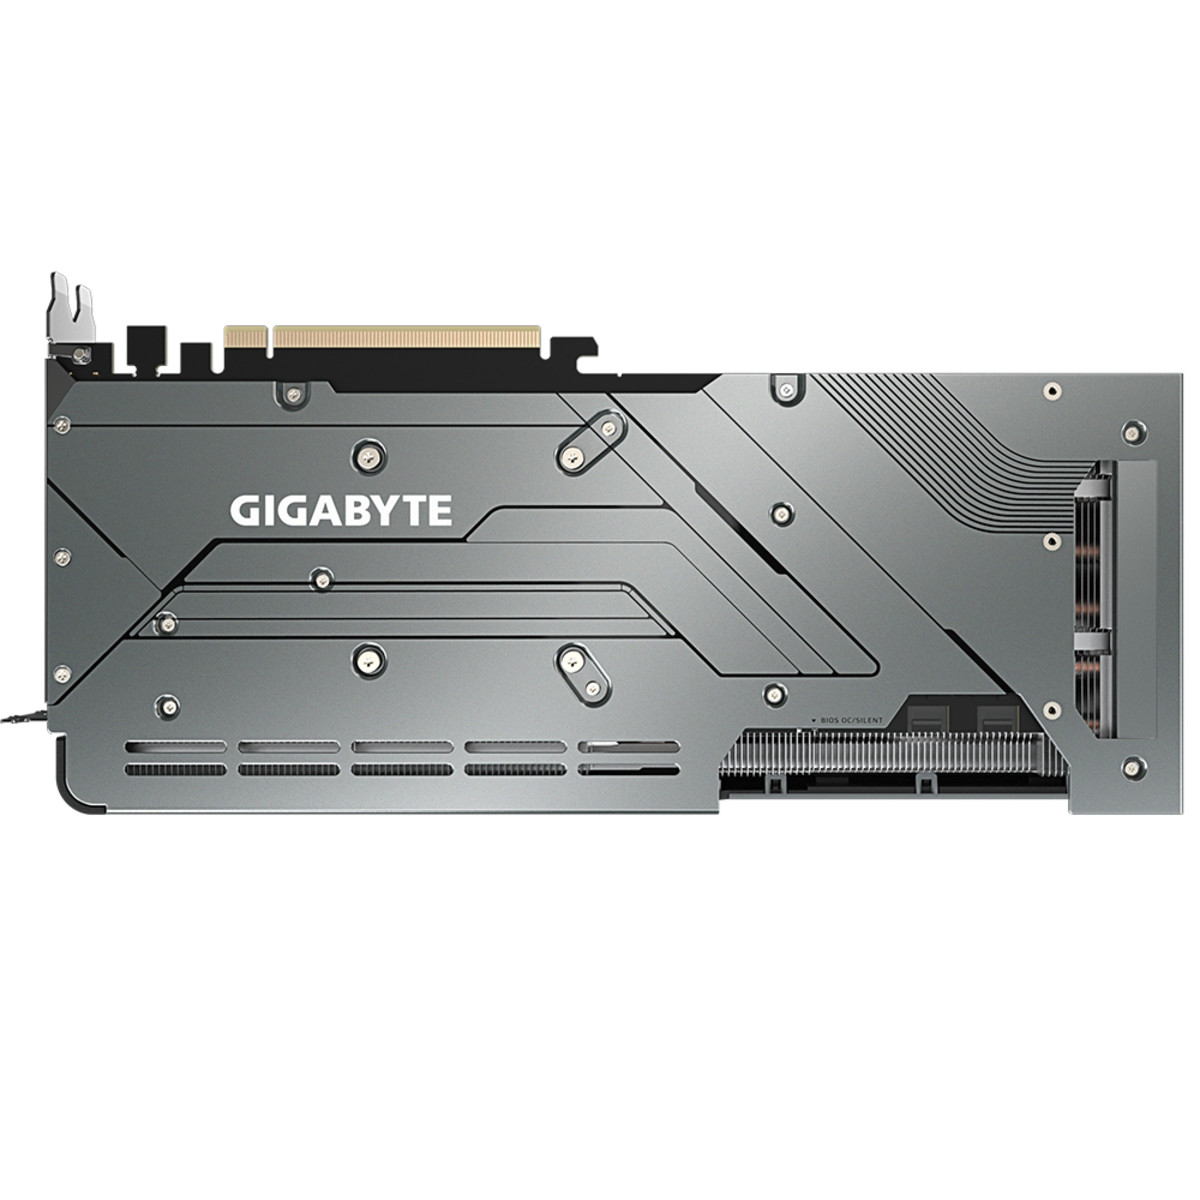 GPU AMD RX 7800 XT Gaming OC 16G Fan